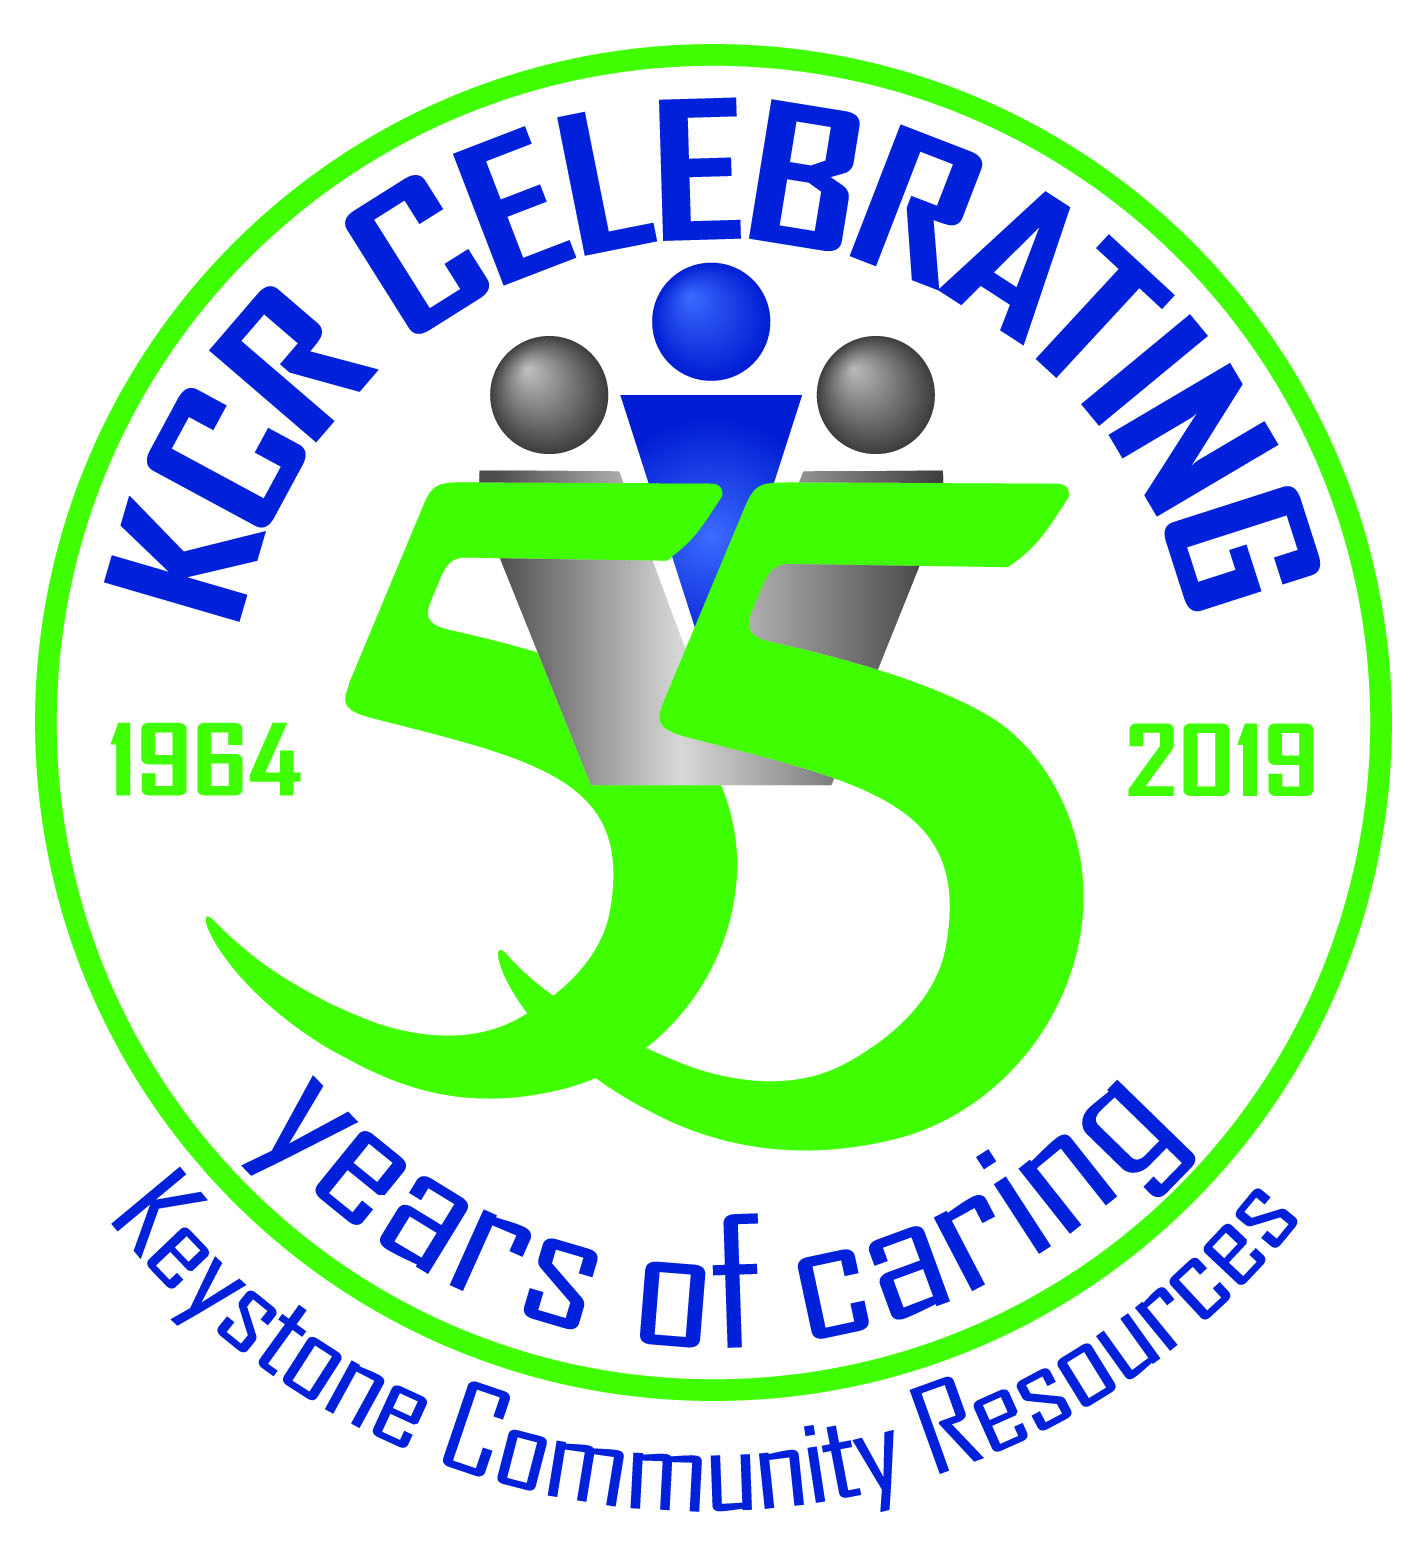 Community Corner: Keystone Community Resources